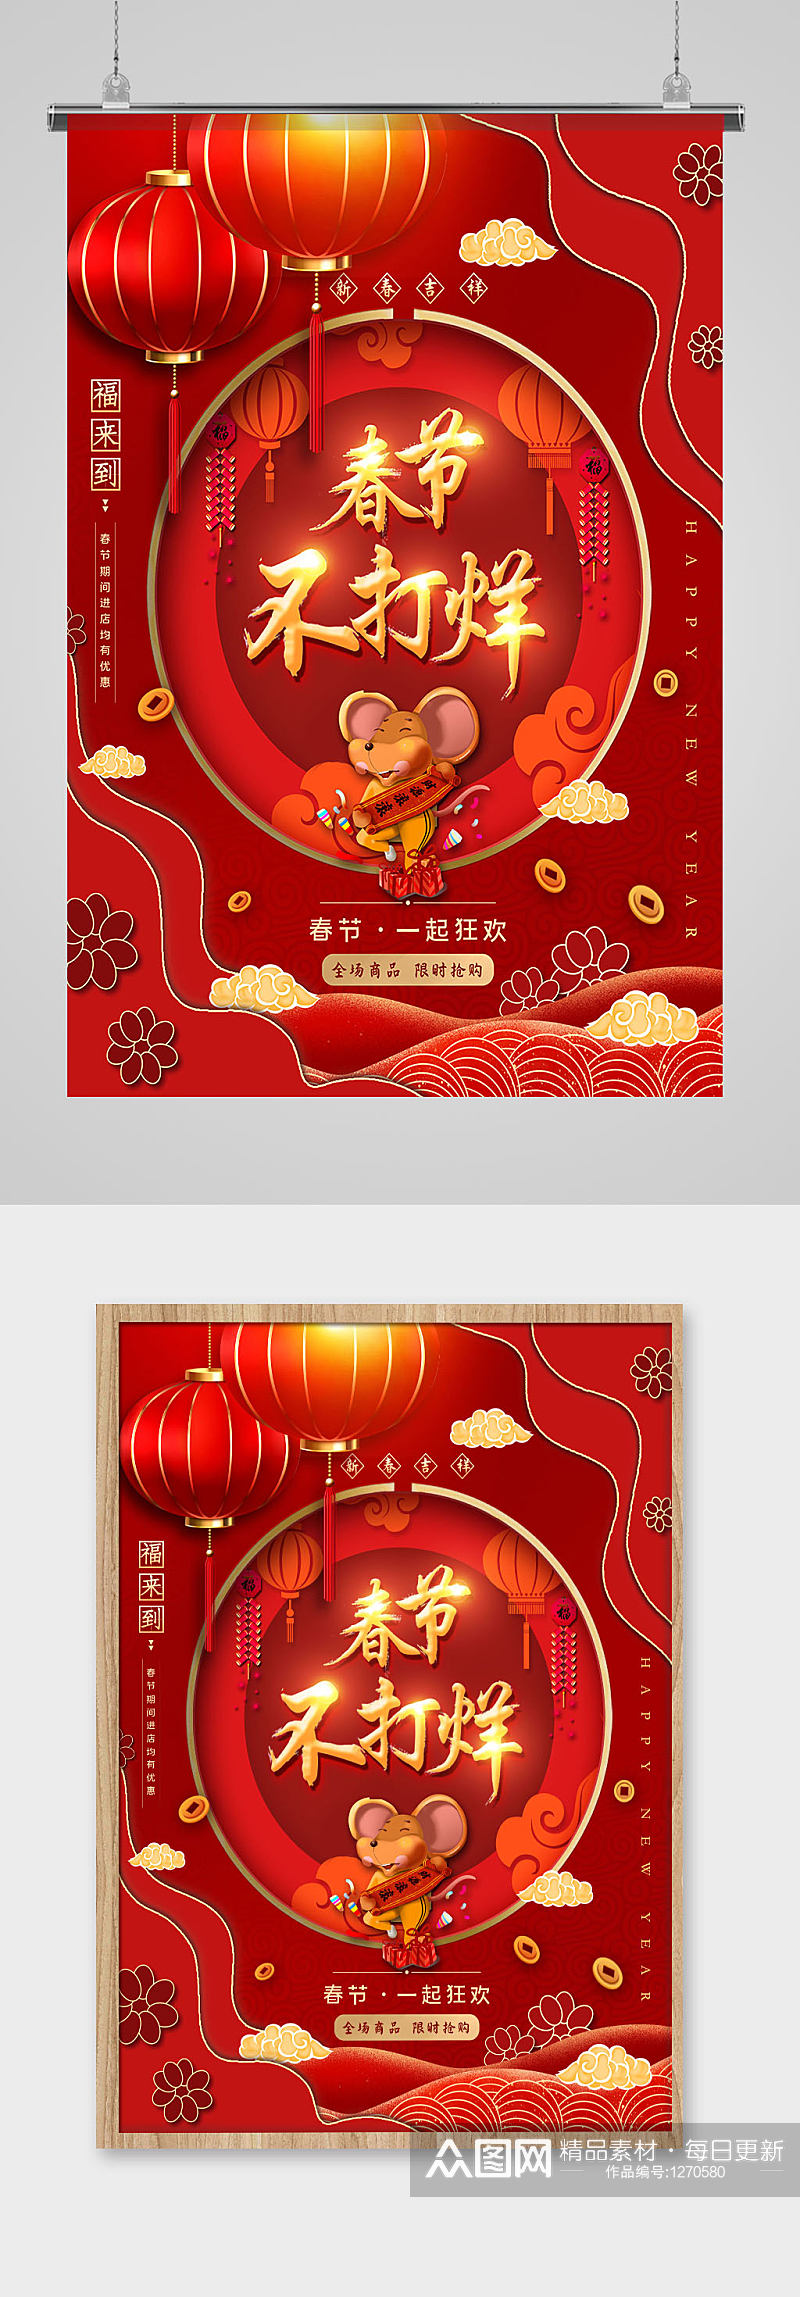 新年春节不打烊中国传统喜庆红色节日海报素材